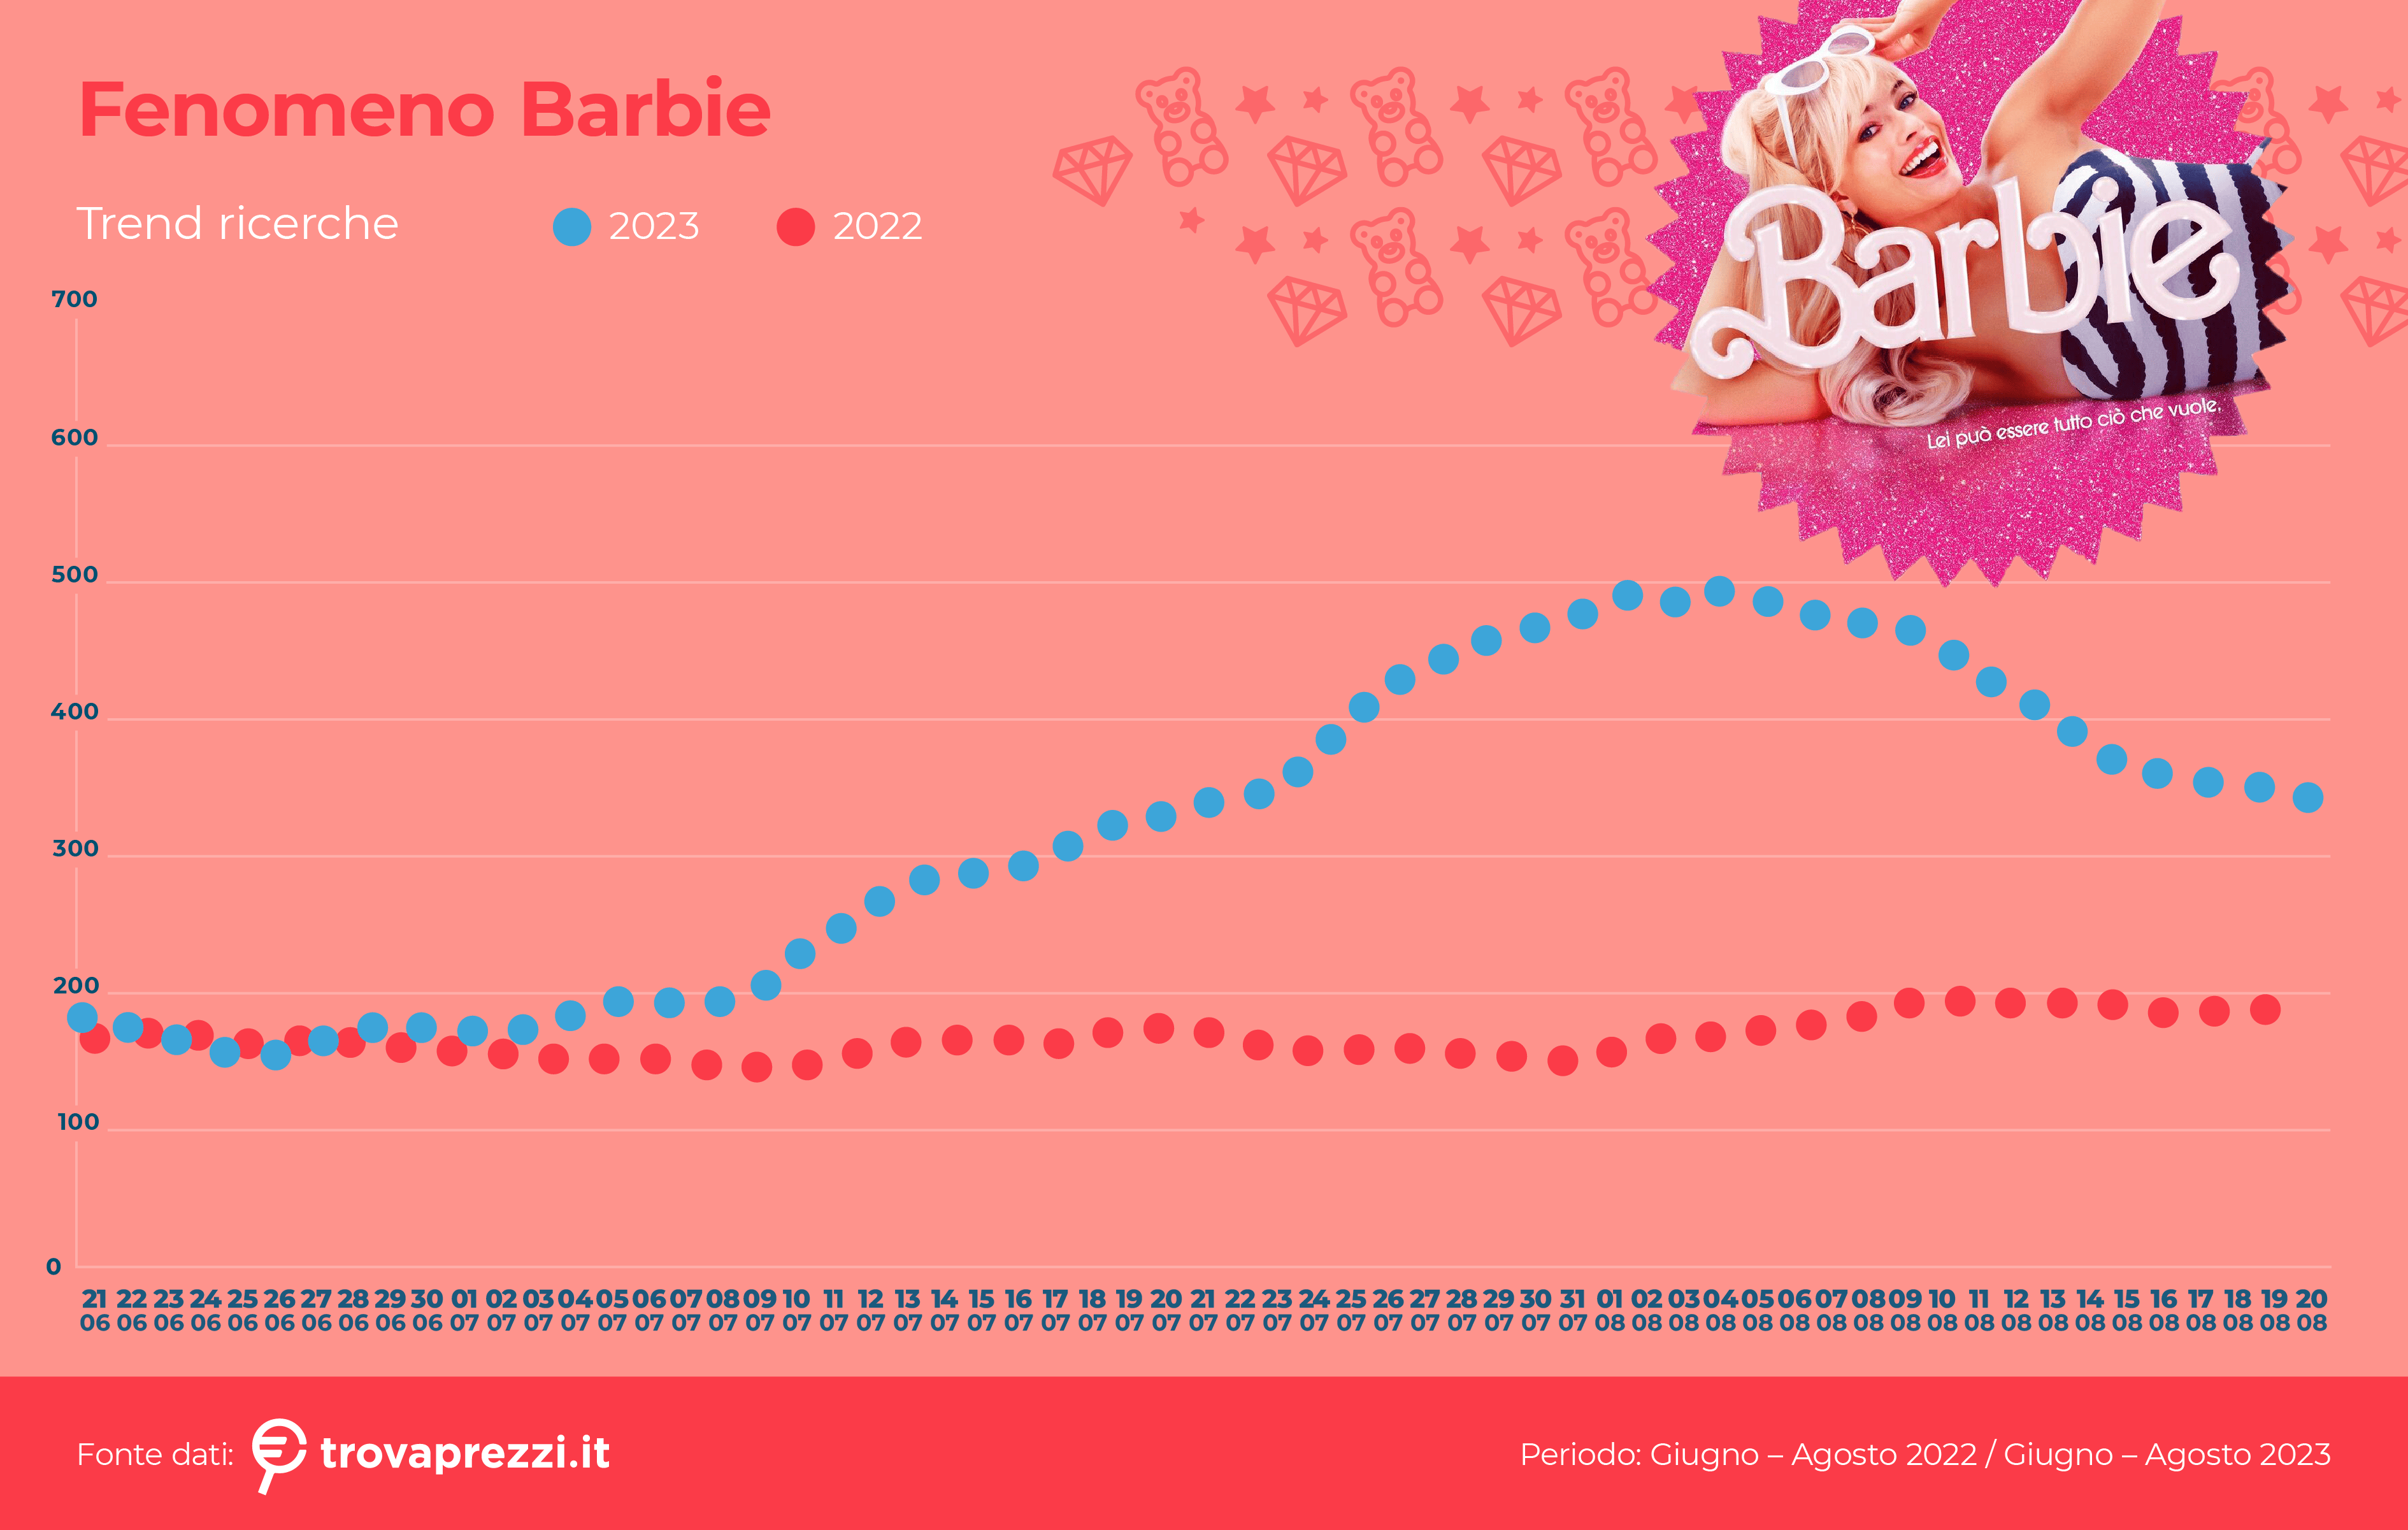 Barbiemania: il fenomeno travolge anche il web Trovaprezzi.it analizza il rinnovato interesse dei navigatori relativo all’iconica bambola